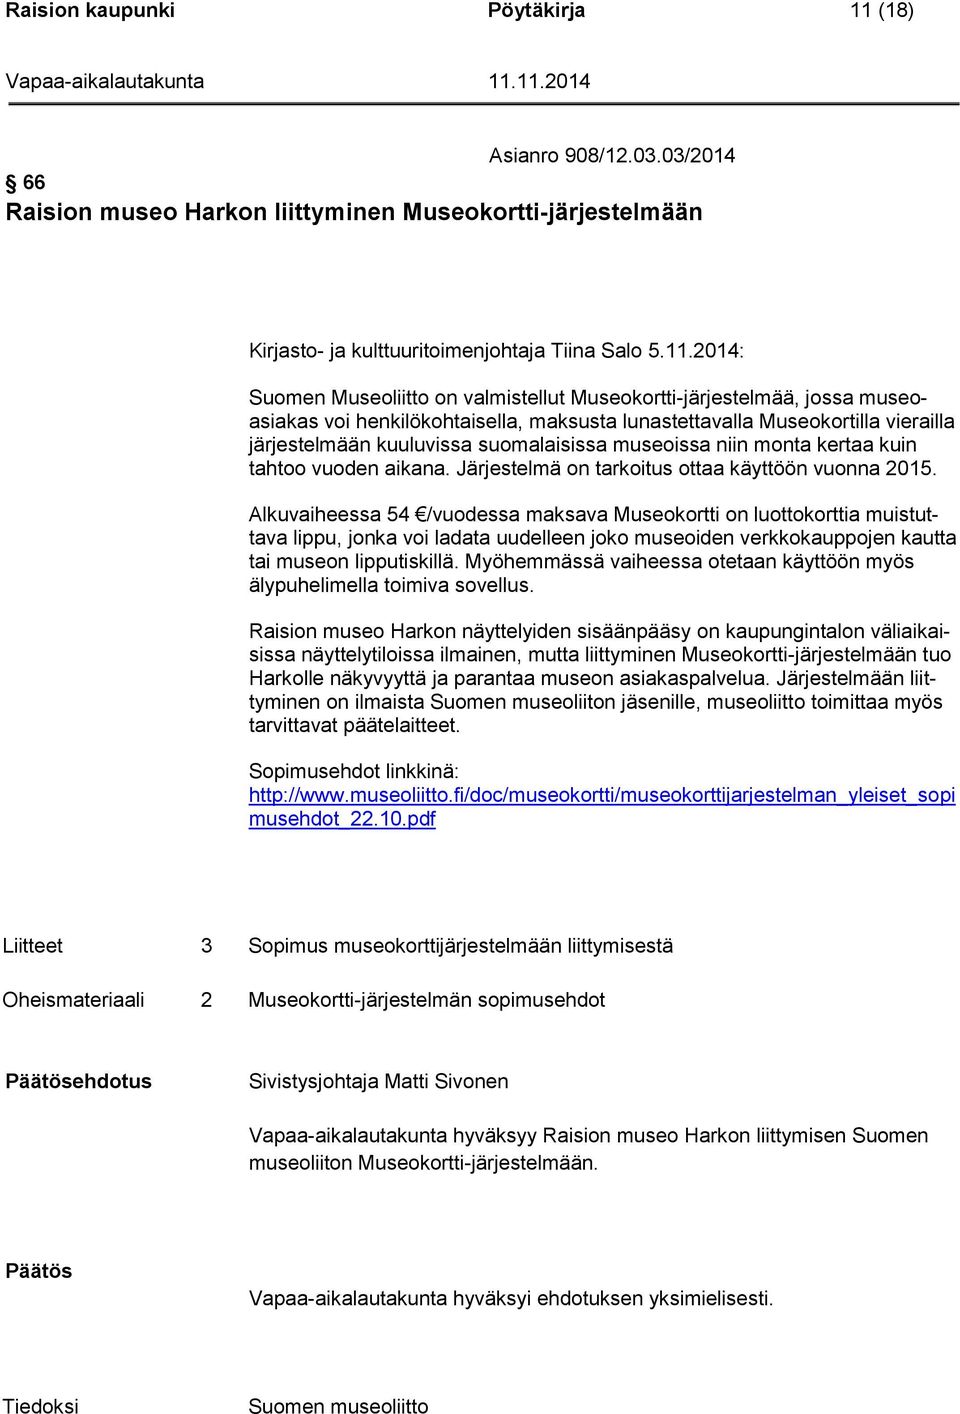 2014: Suomen Museoliitto on valmistellut Museokortti-järjestelmää, jossa museoasiakas voi henkilökohtaisella, maksusta lunastettavalla Museokortilla vierailla järjestelmään kuuluvissa suomalaisissa